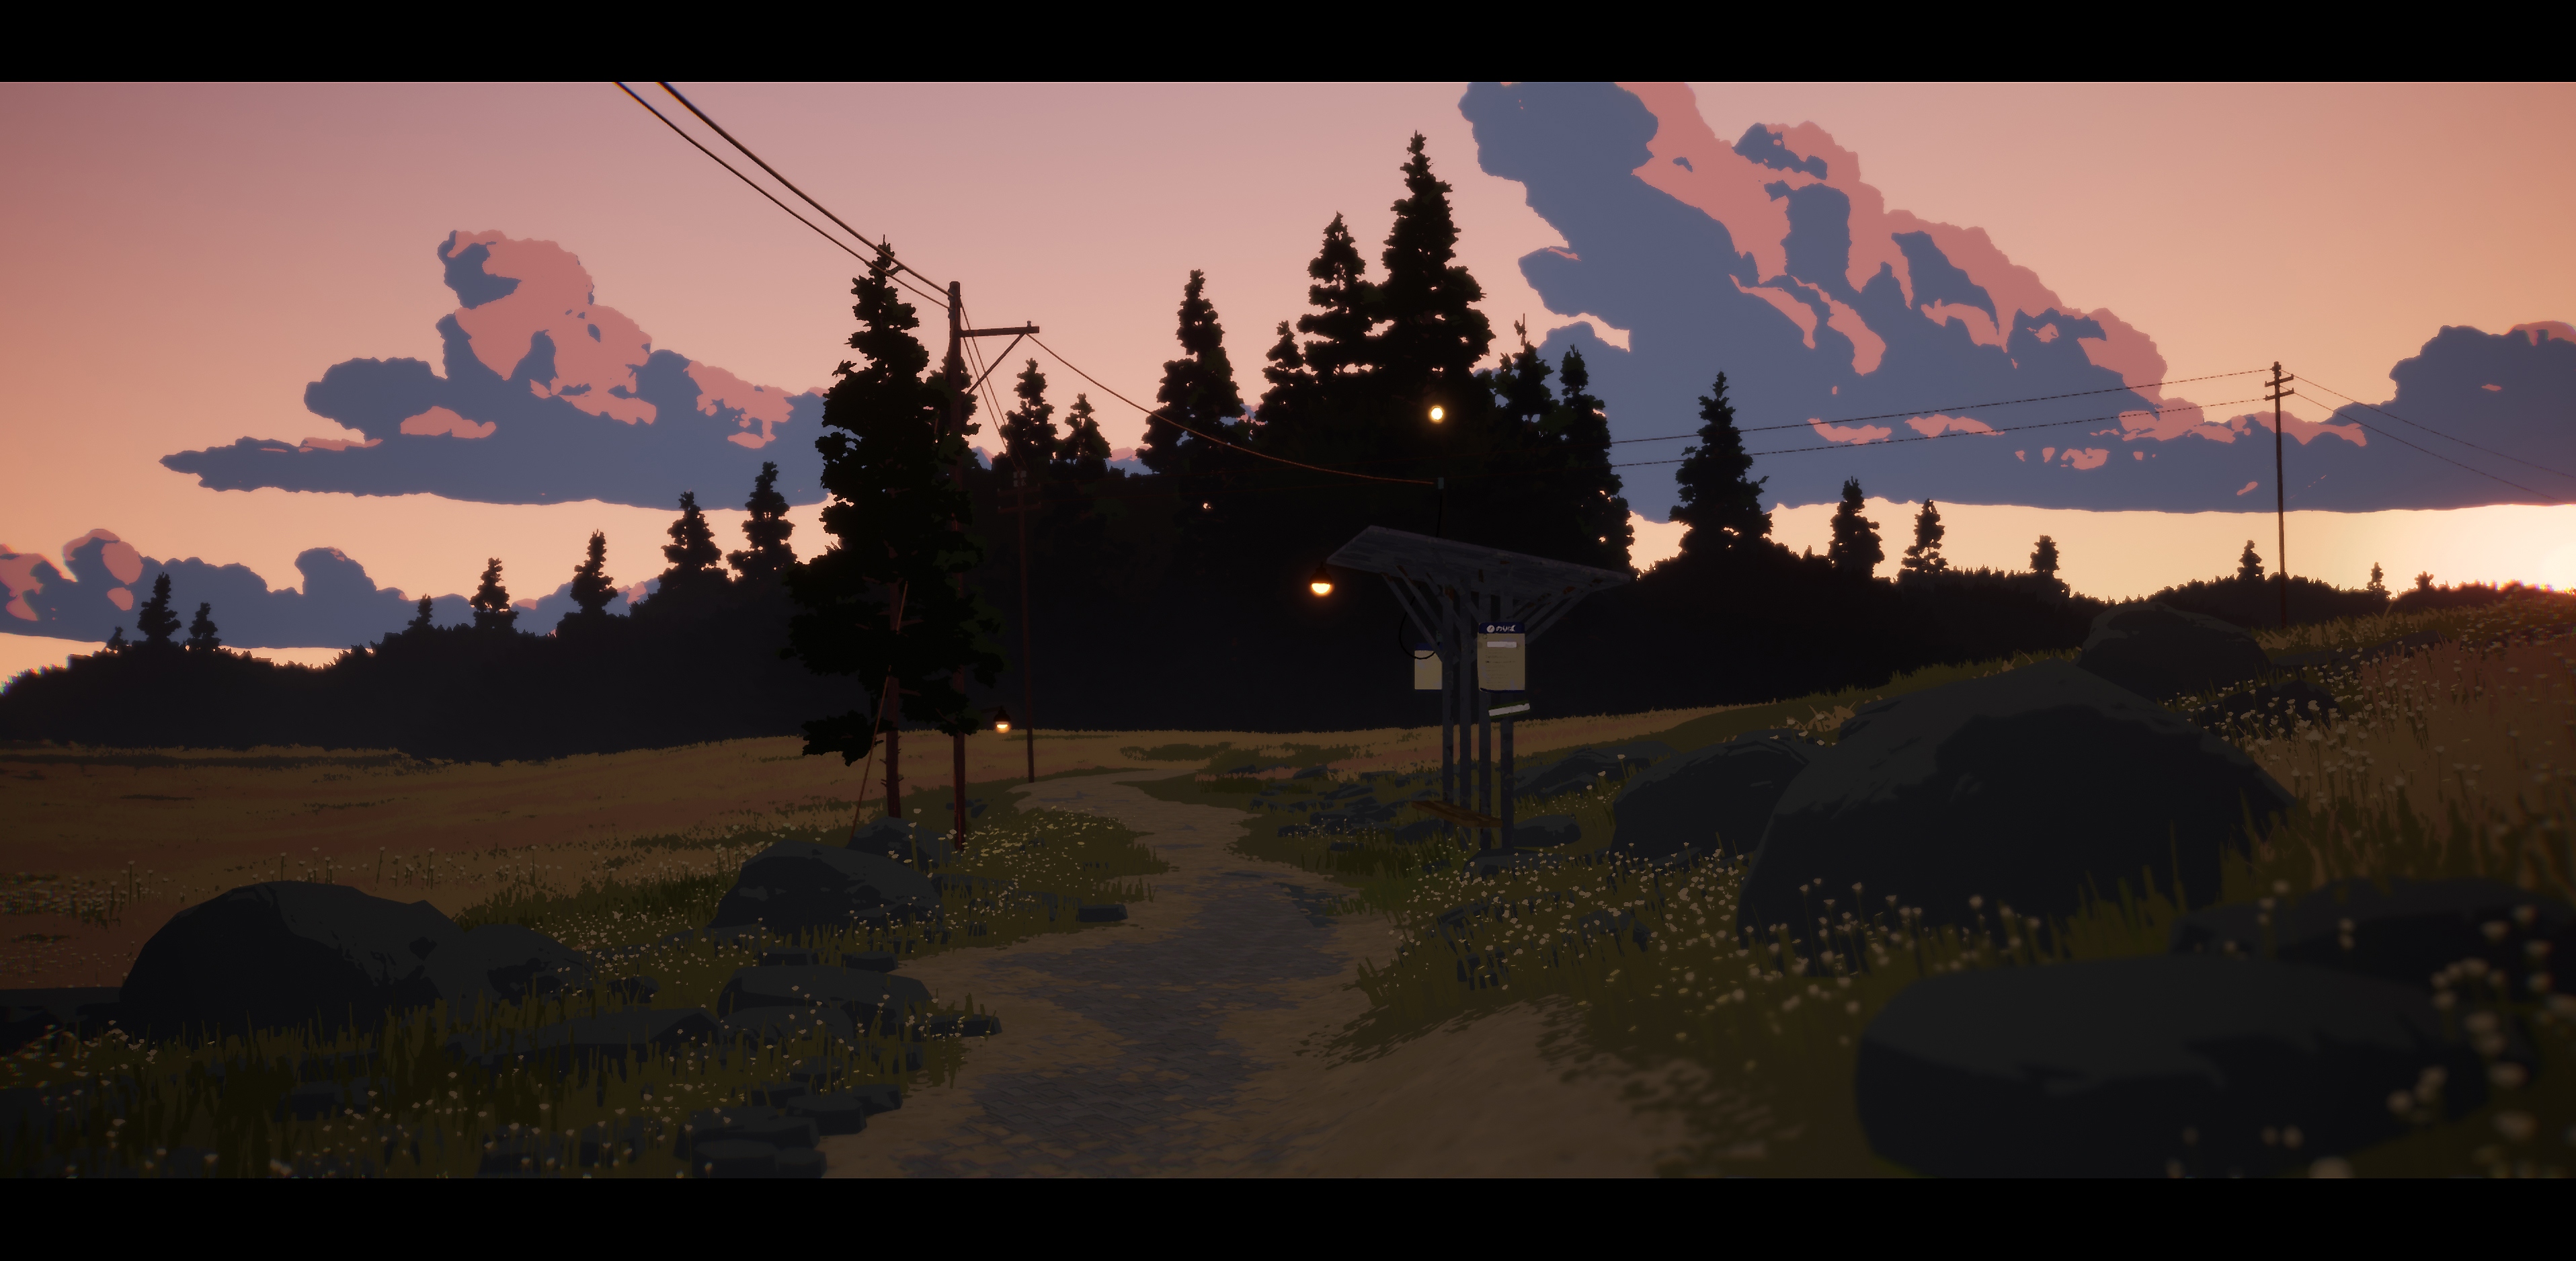 لعبة Season: A Letter to the Future - لقطة شاشة تعرض طريقًا يؤدي إلى بعض الأشجار